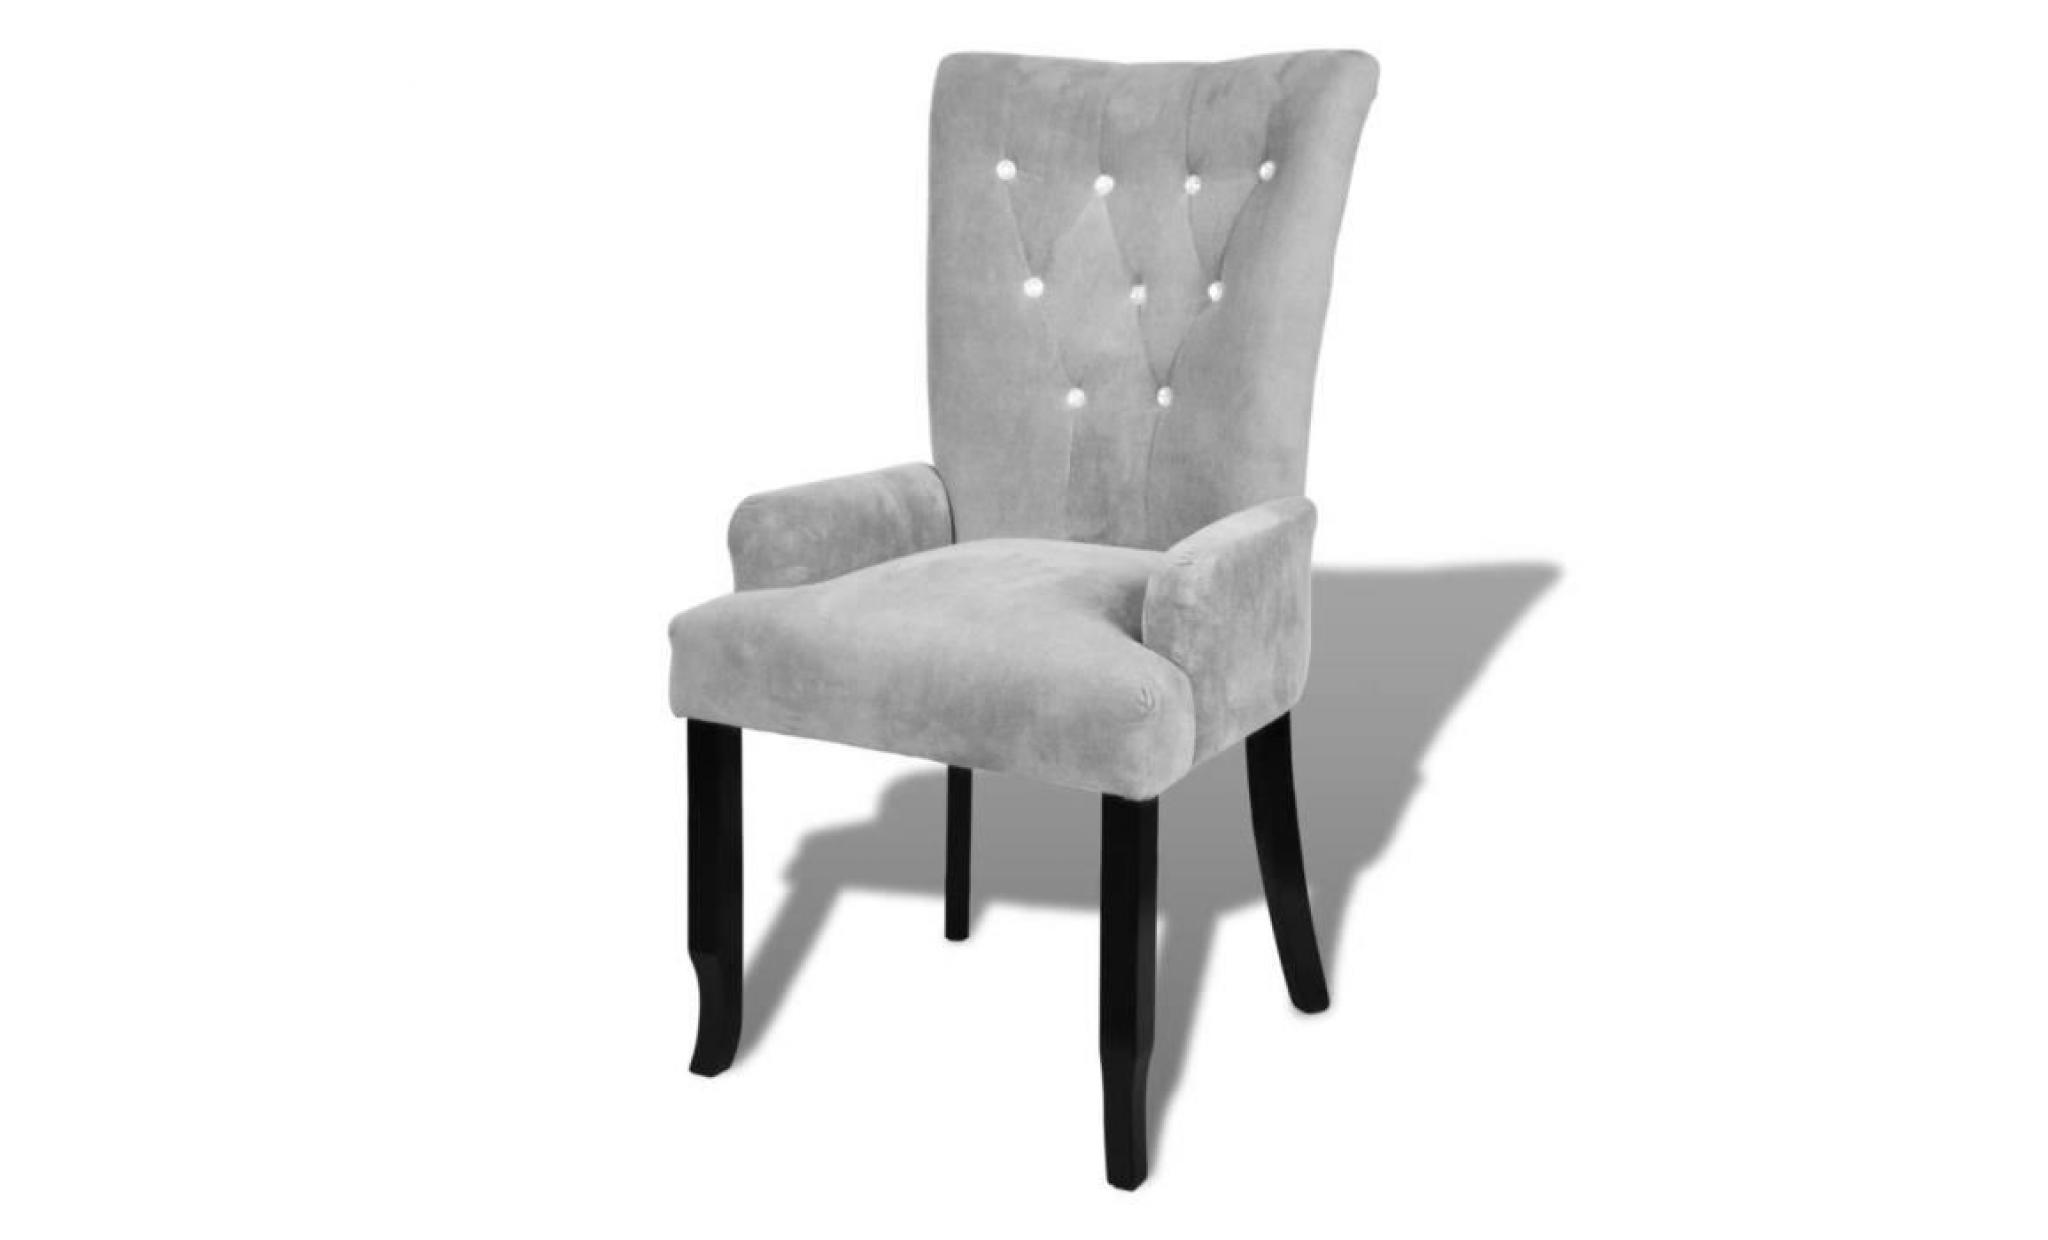 fauteuil avec cadre fauteuil scandinave fauteuil de jardin en bois velours argenté fauteuil de bureau pas cher